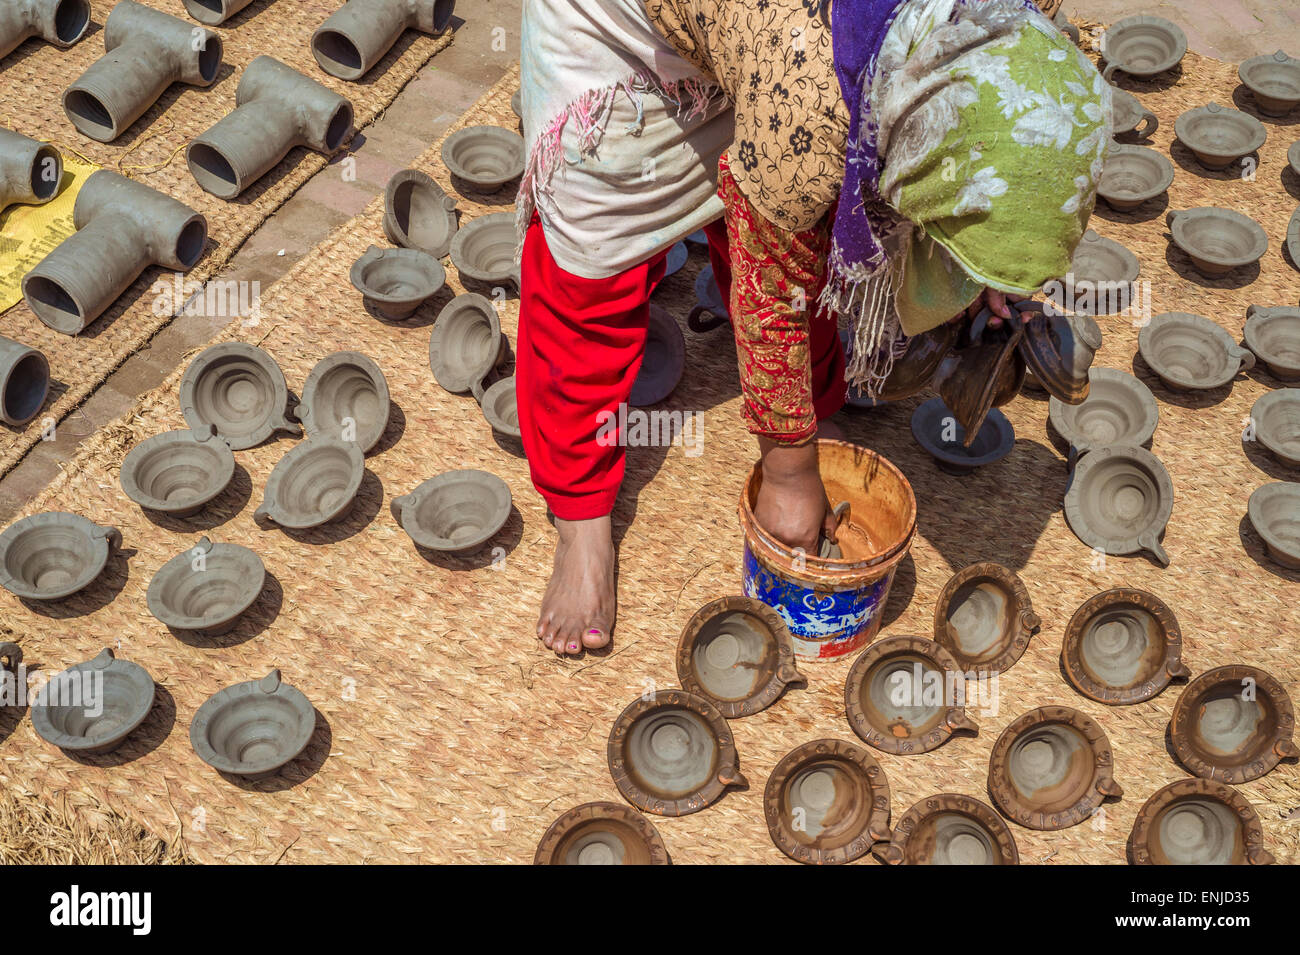 Bhaktapur, Nepal - 20 marzo 2015: donna immissione potteries a secco sulla piazza di ceramiche. Foto Stock